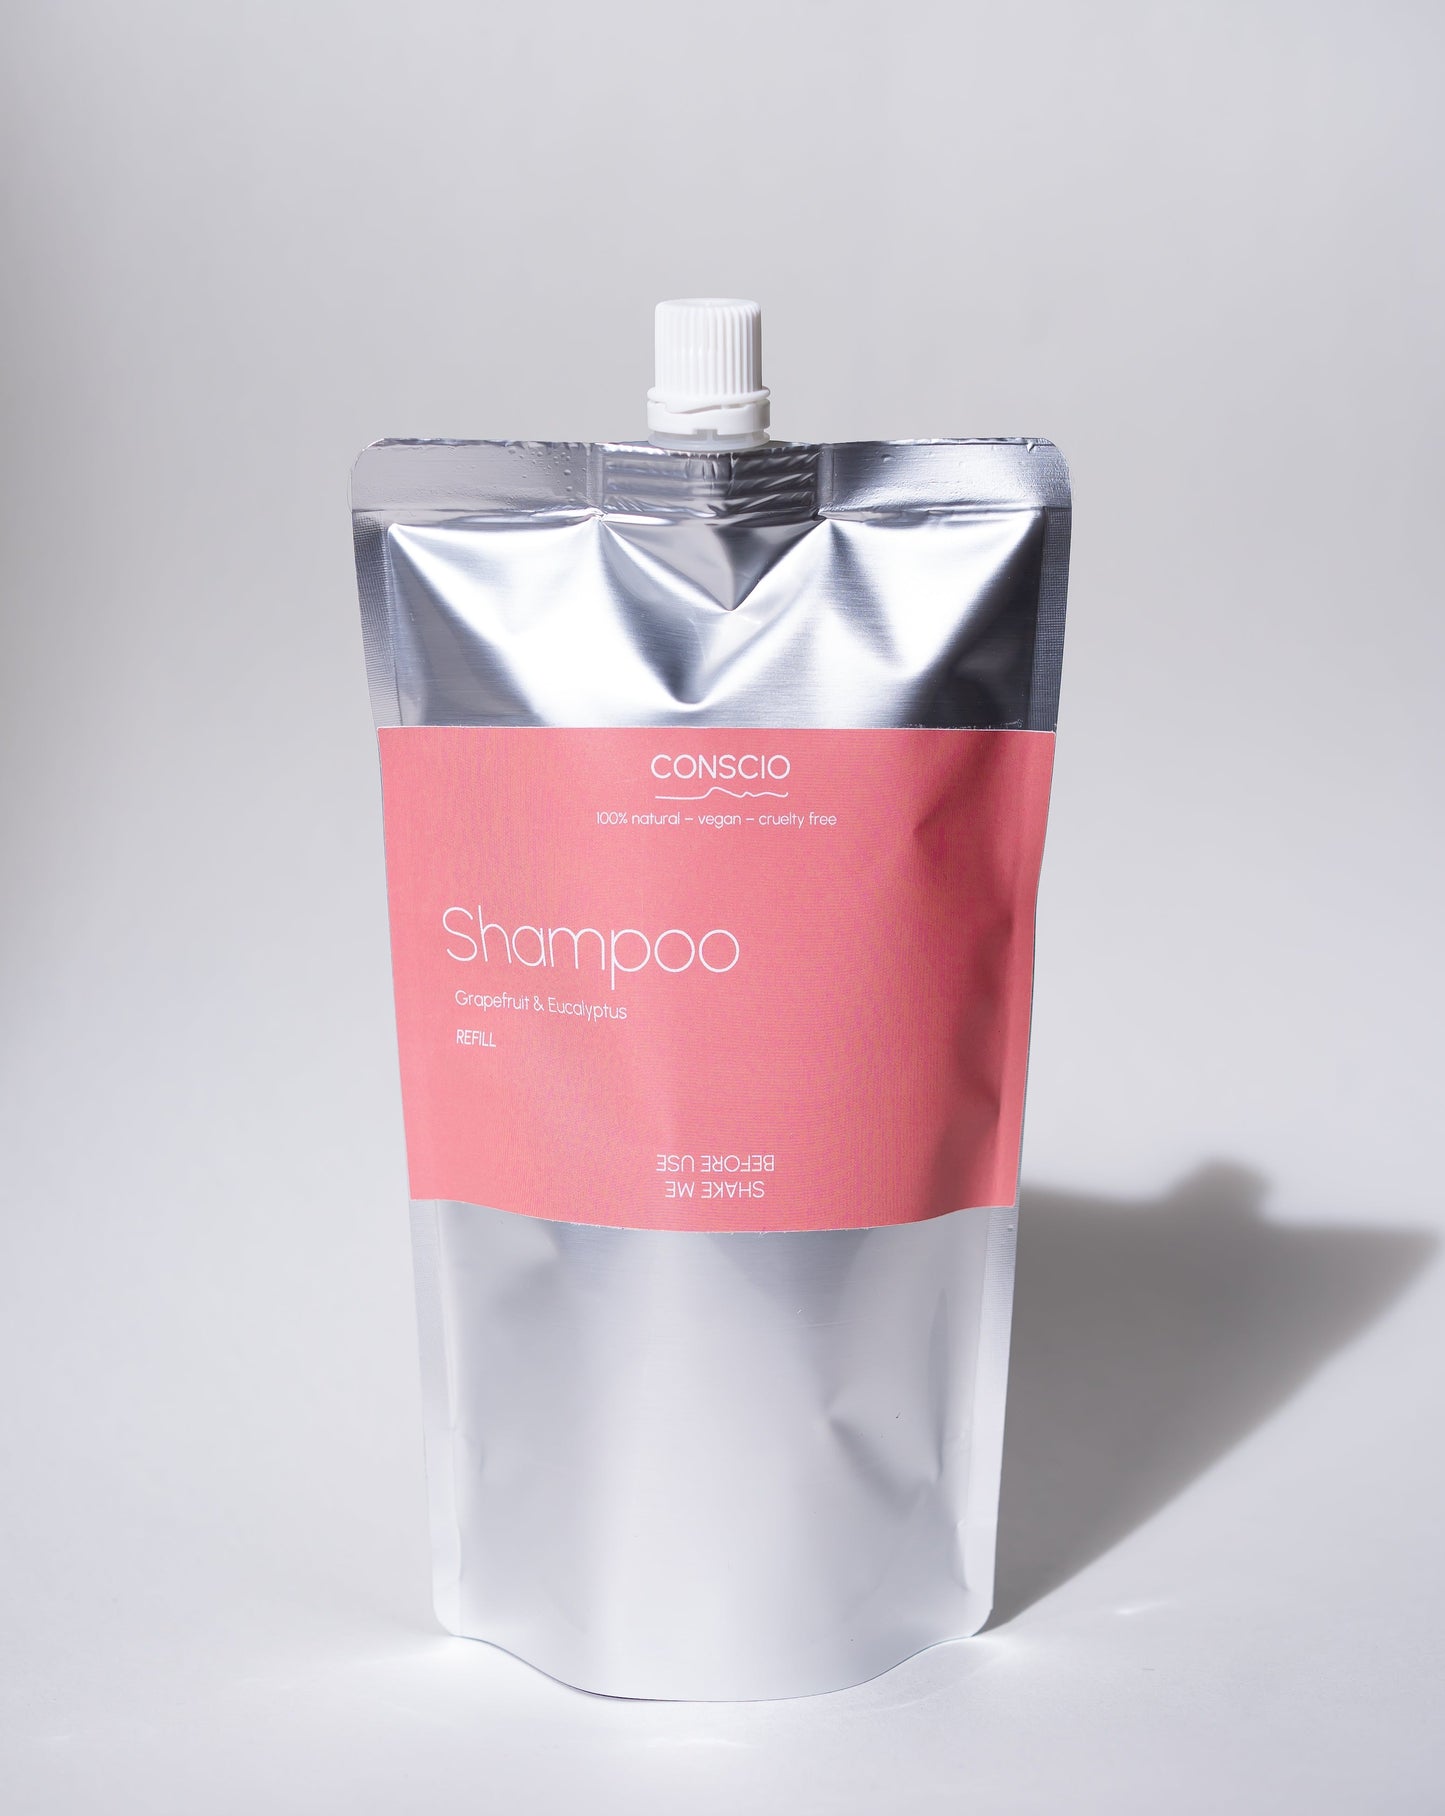 Conscio shampoo eucalyptus & grapefruit